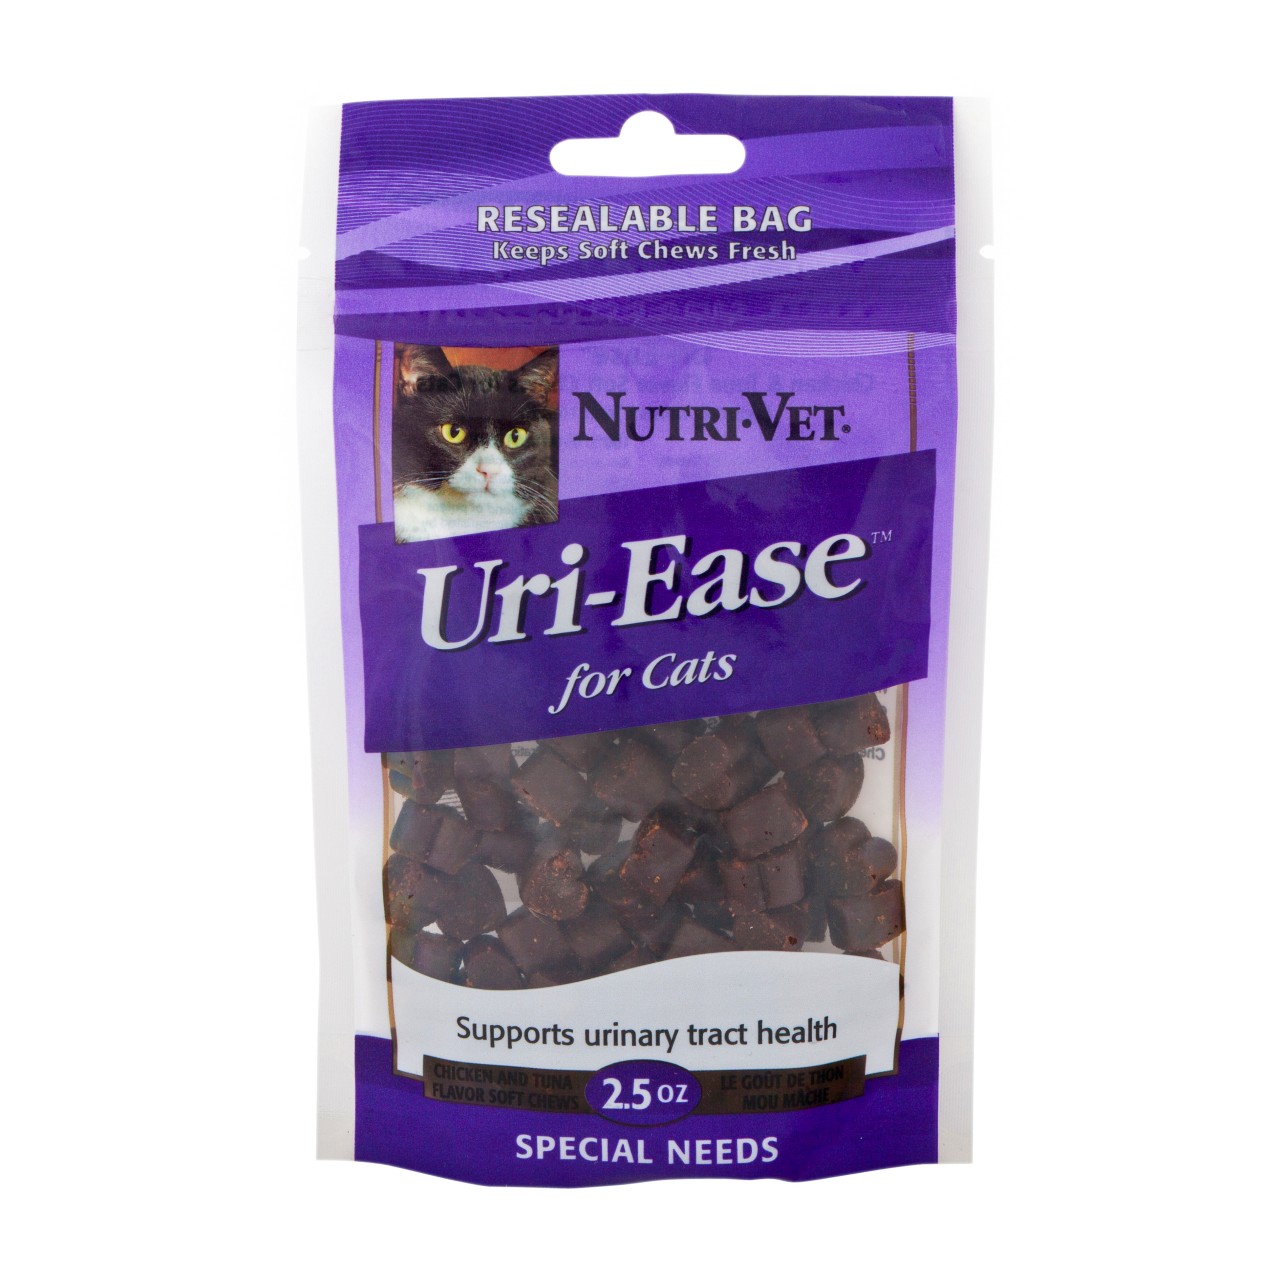 Nutri-Vet Uri-Ease soft chews for Cat